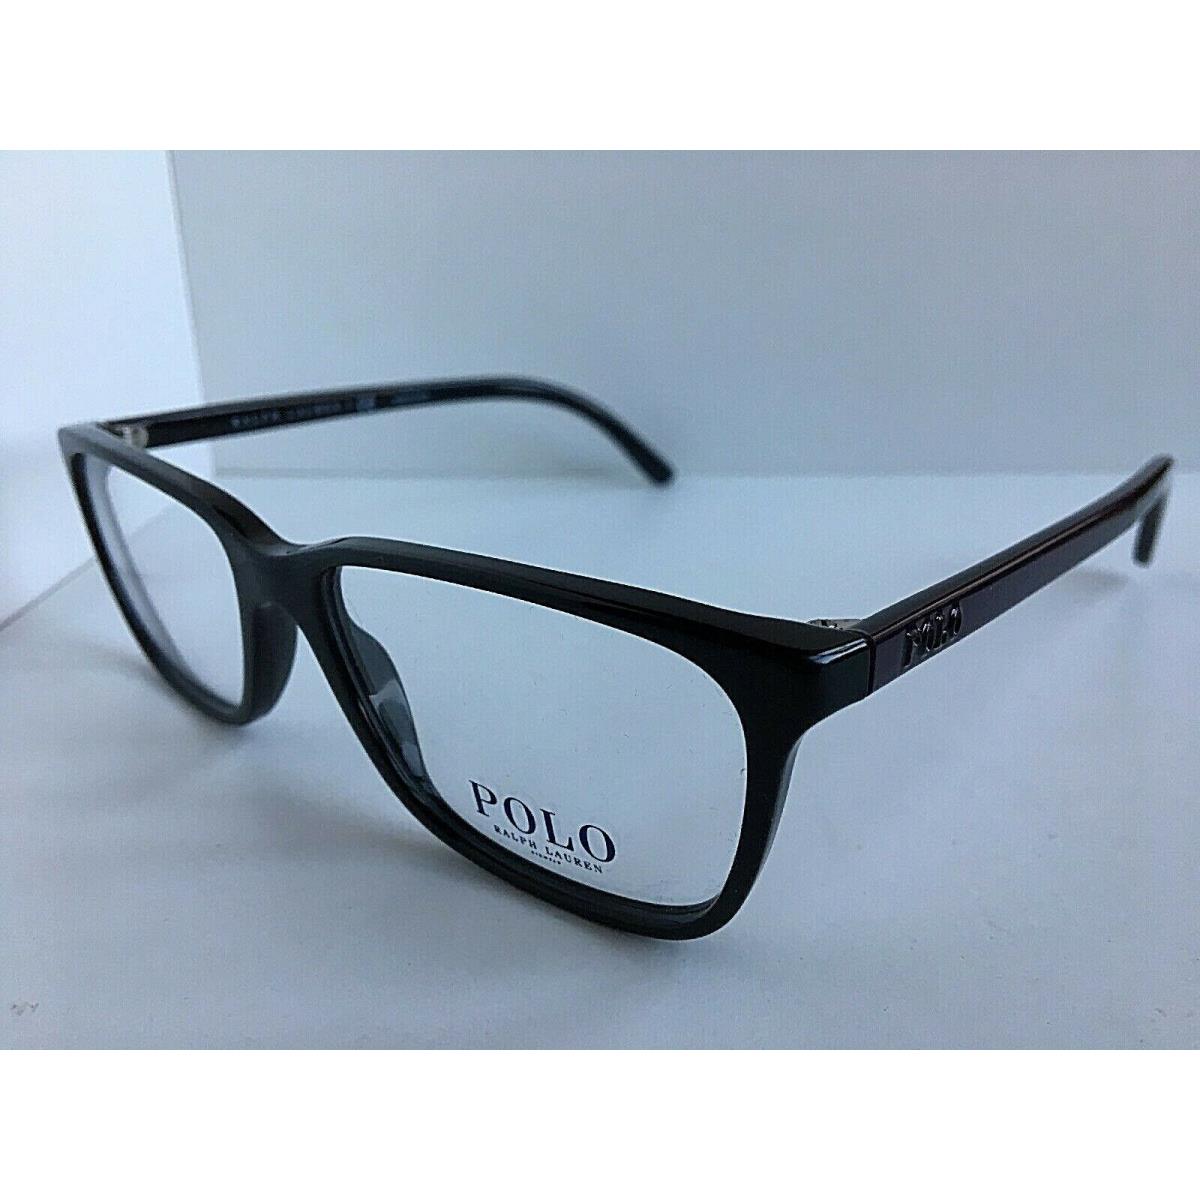 Polo Ralph Lauren PH2129 5517 53mm Black Men`s Eyeglasses Frame